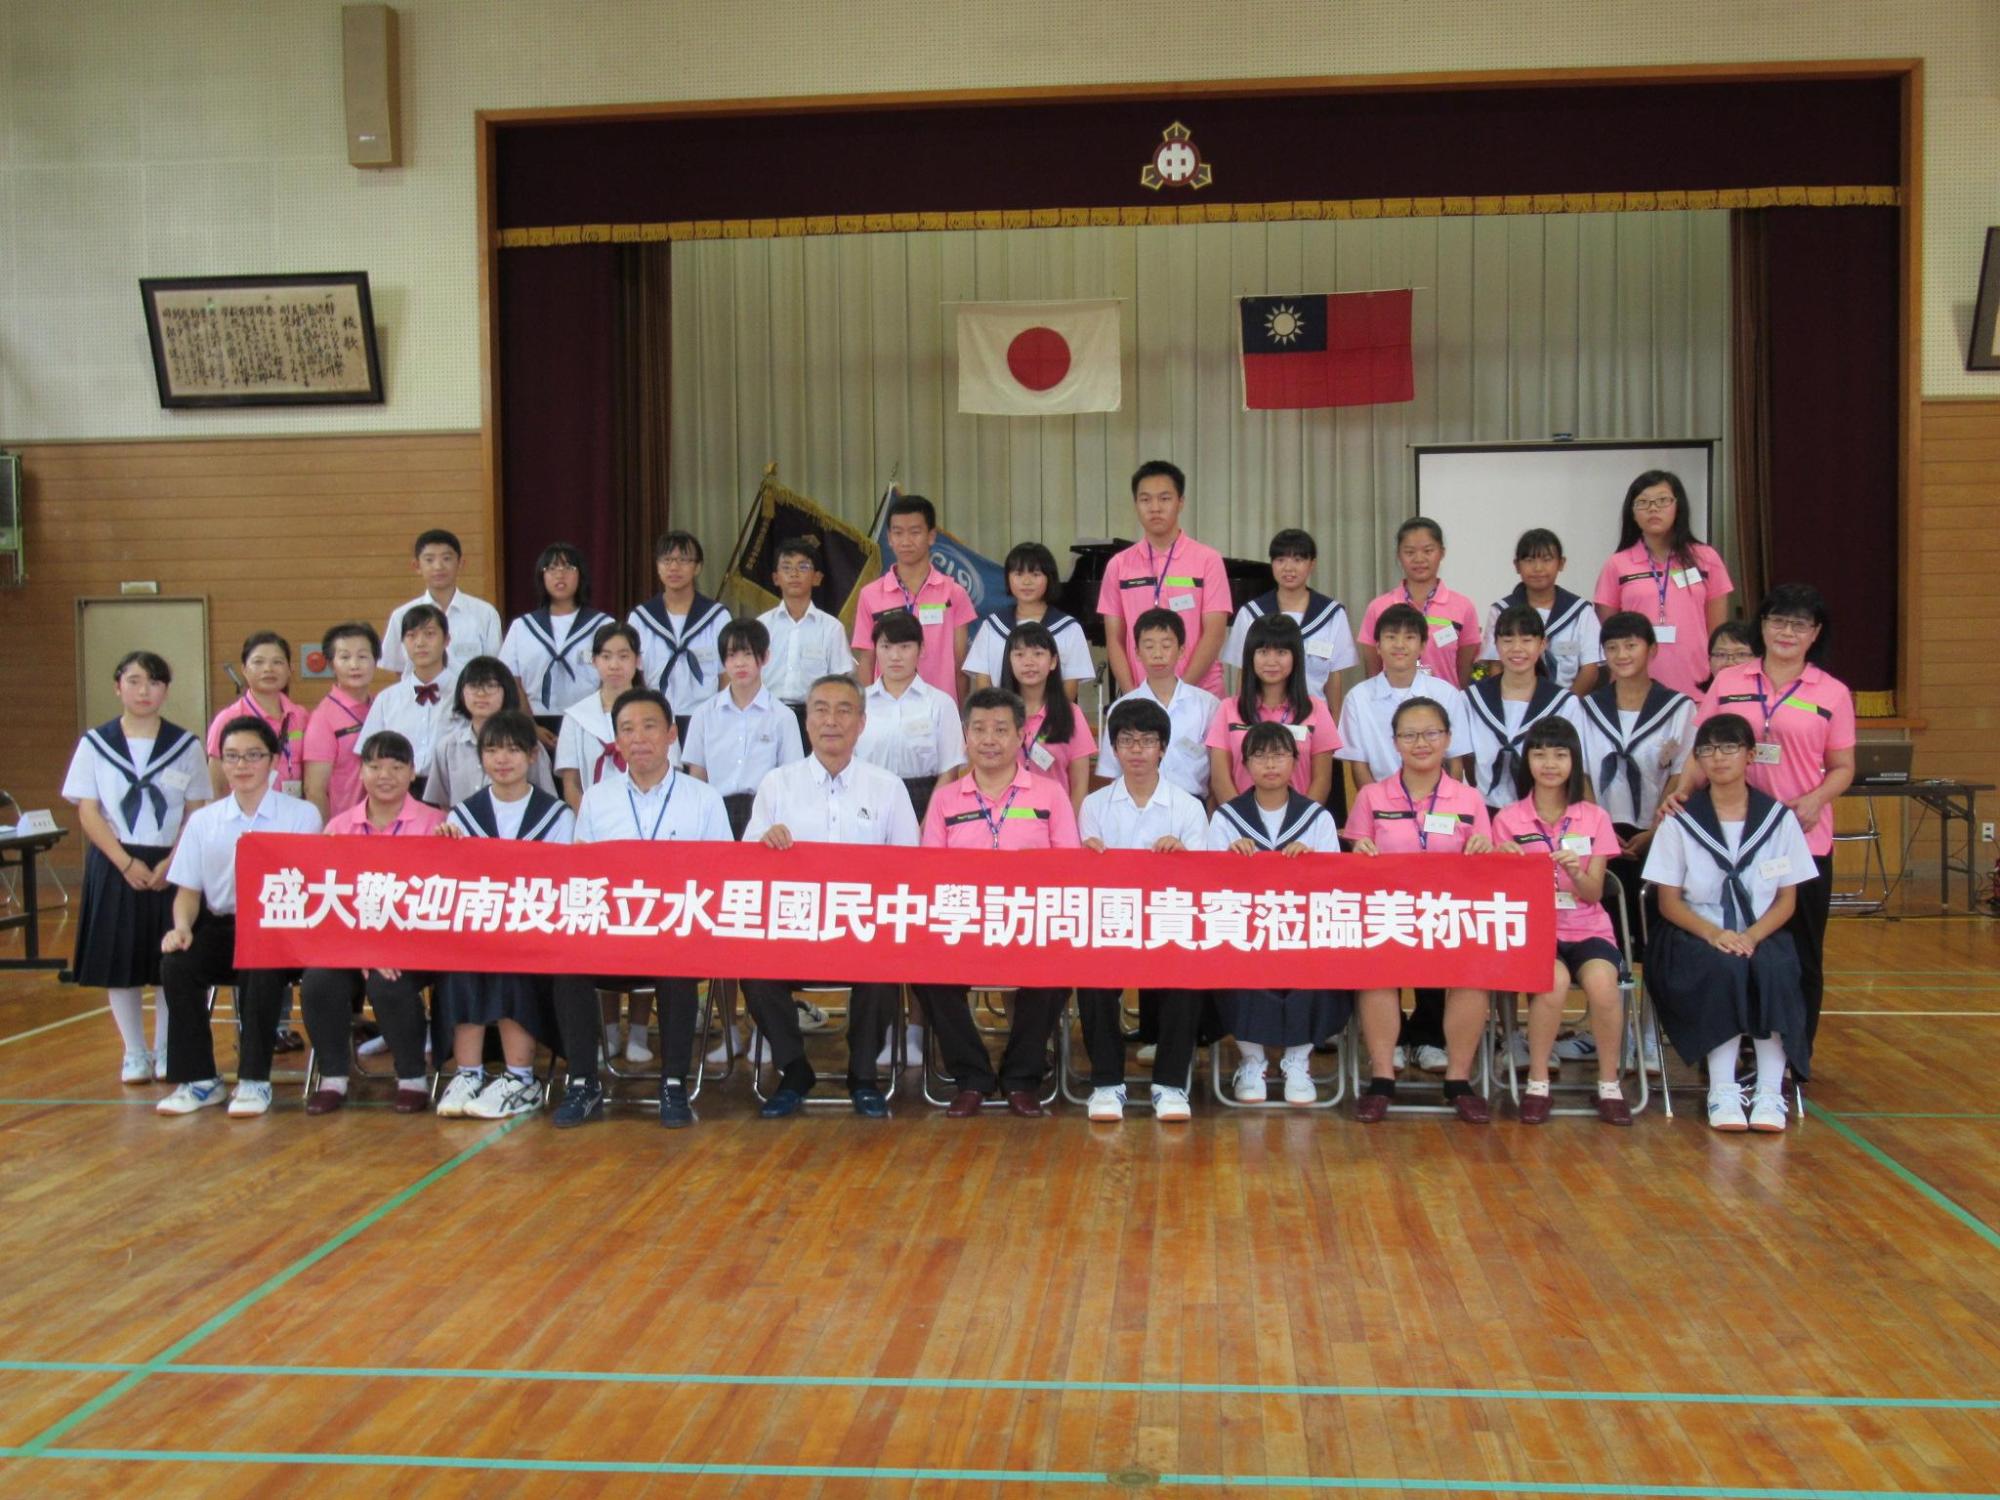 横断幕を持った美祢市の中高生と台湾南投縣水里郷の水里国民中学の生徒たちの集合写真